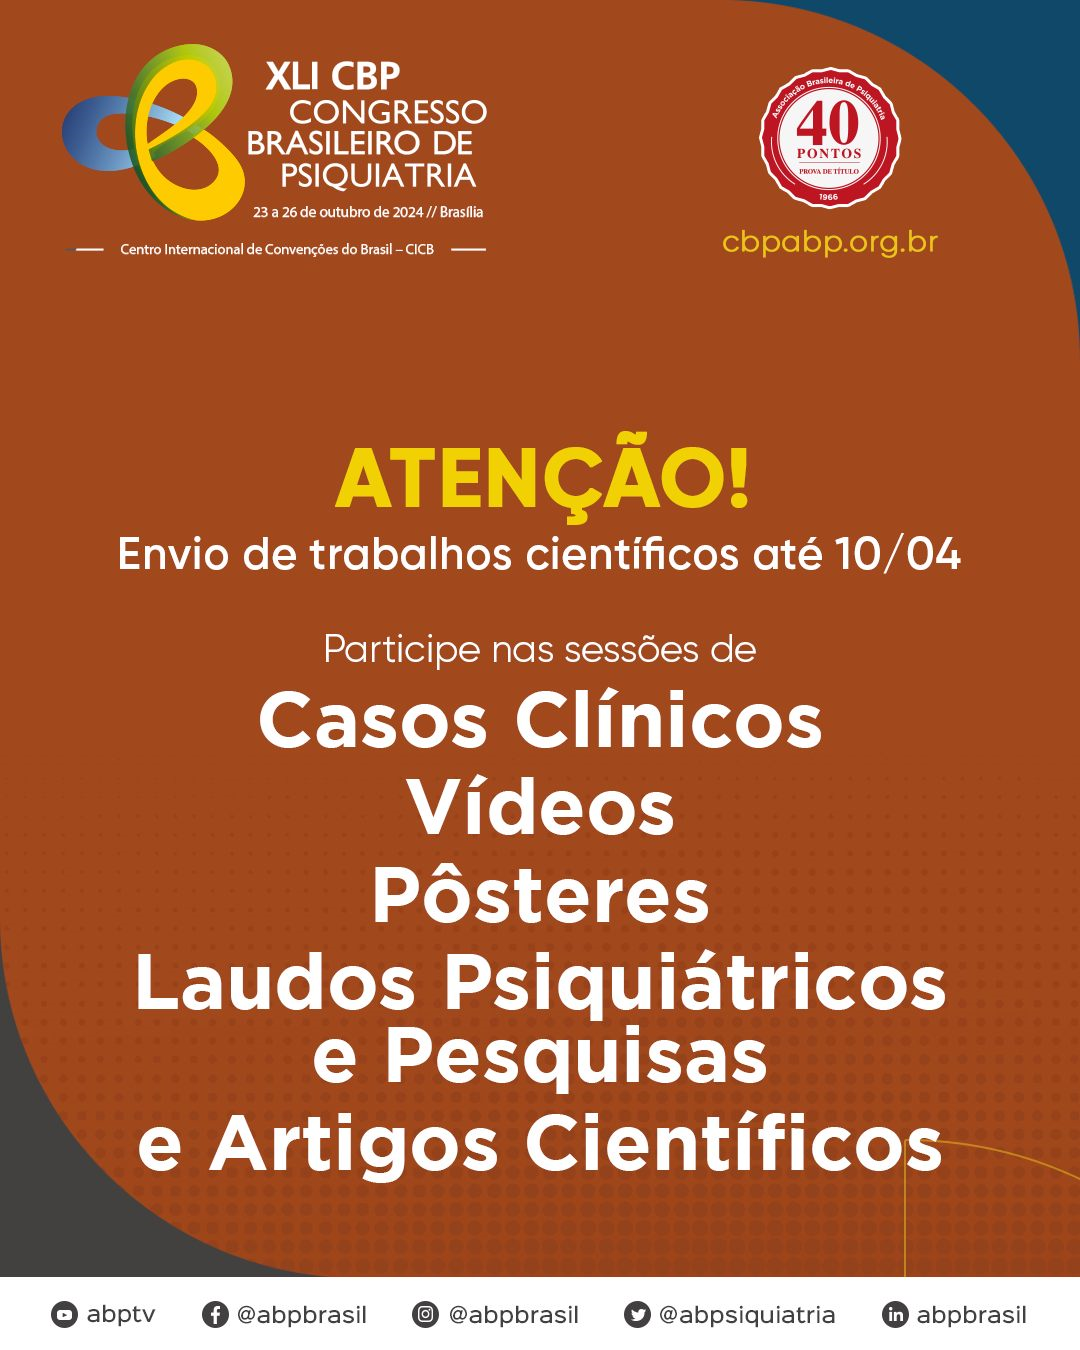 Inteligência artificial é tema do XLI Congresso Brasileiro de Psiquiatria